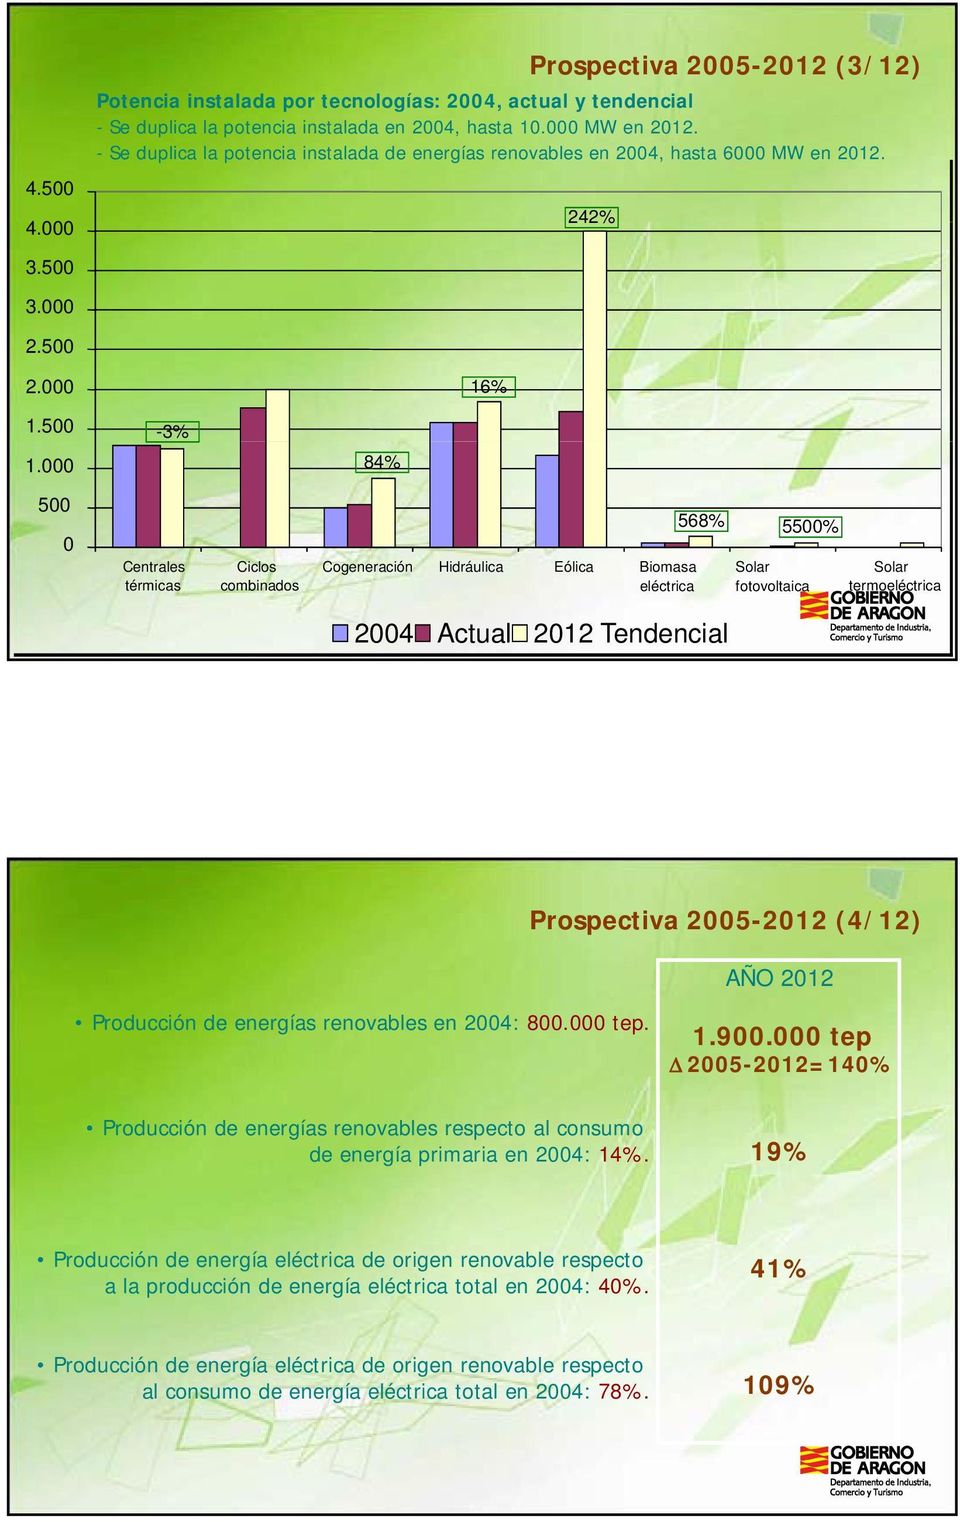 000-3% 84% 500 0 Centrales térmicas Ciclos combinados Cogeneración Hidráulica Eólica Biomasa eléctrica 568% 5500% Solar fotovoltaica Solar termoeléctrica 2004 Actual 2012 Tendencial Prospectiva